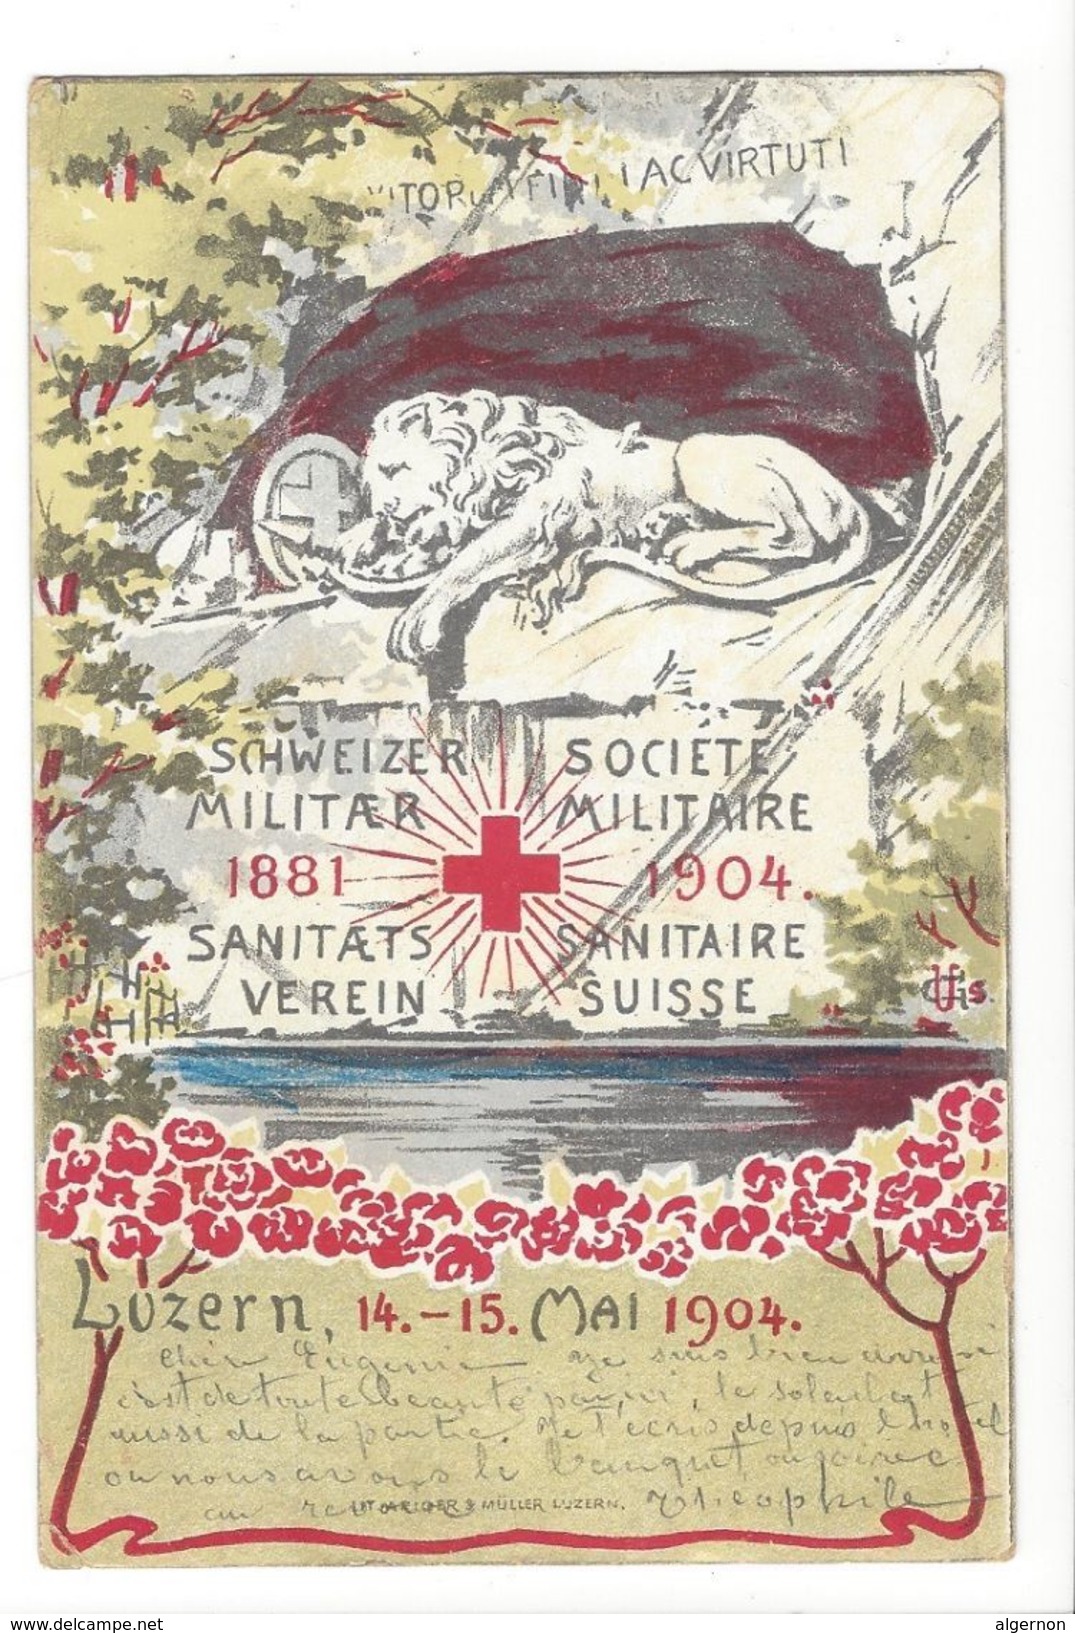 17495 - Luzern 1904 Société Militaire Sanitaire Suisse - Lucerne